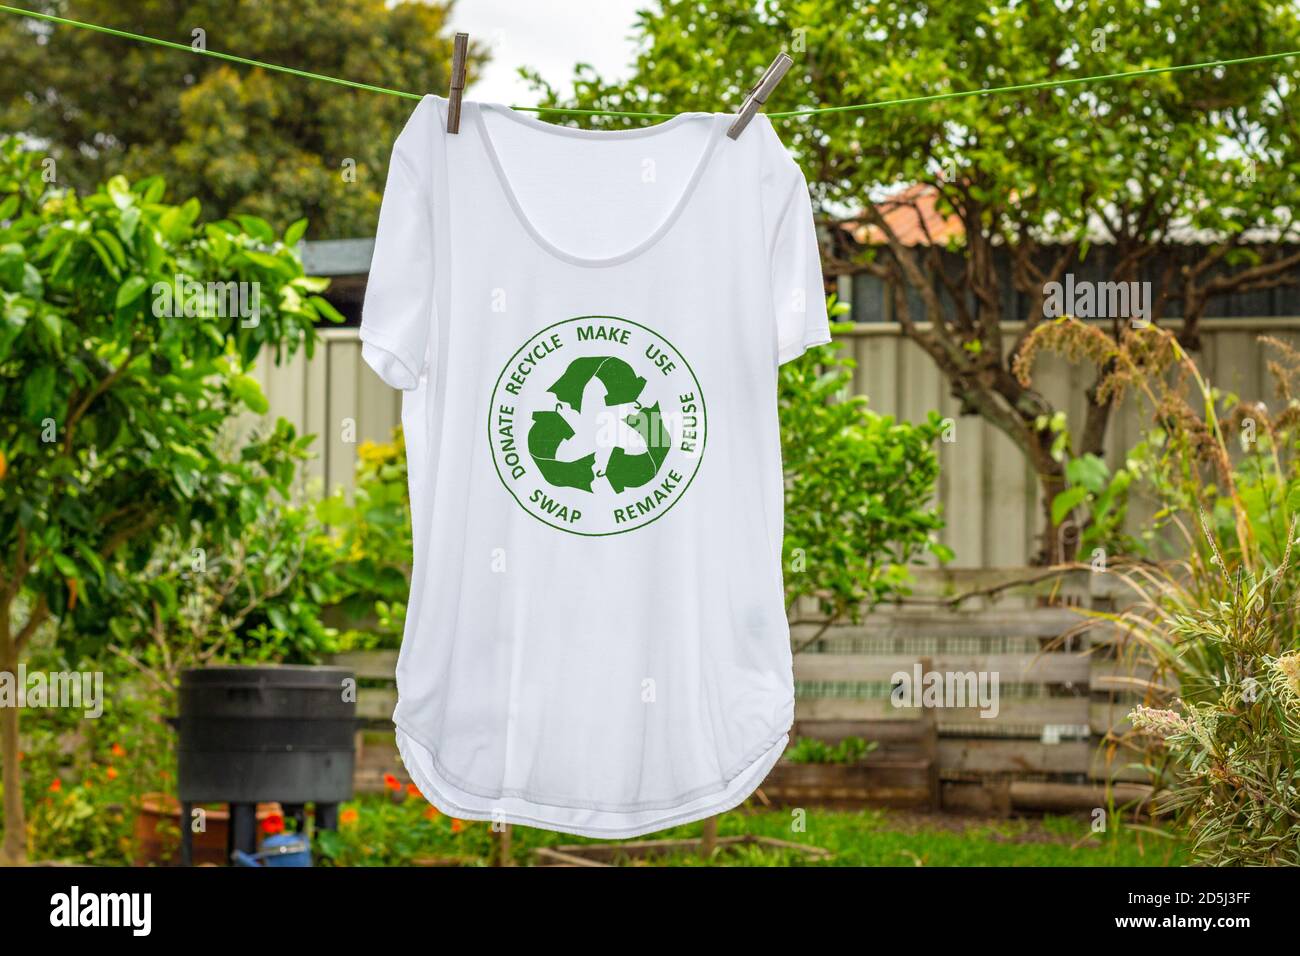 Camiseta en la línea de lavado con la economía circular textiles icono, hacer, utilizar, reutilizar, intercambiar, donar, reciclar con eco ropa reciclar icono de moda sostenible Foto de stock